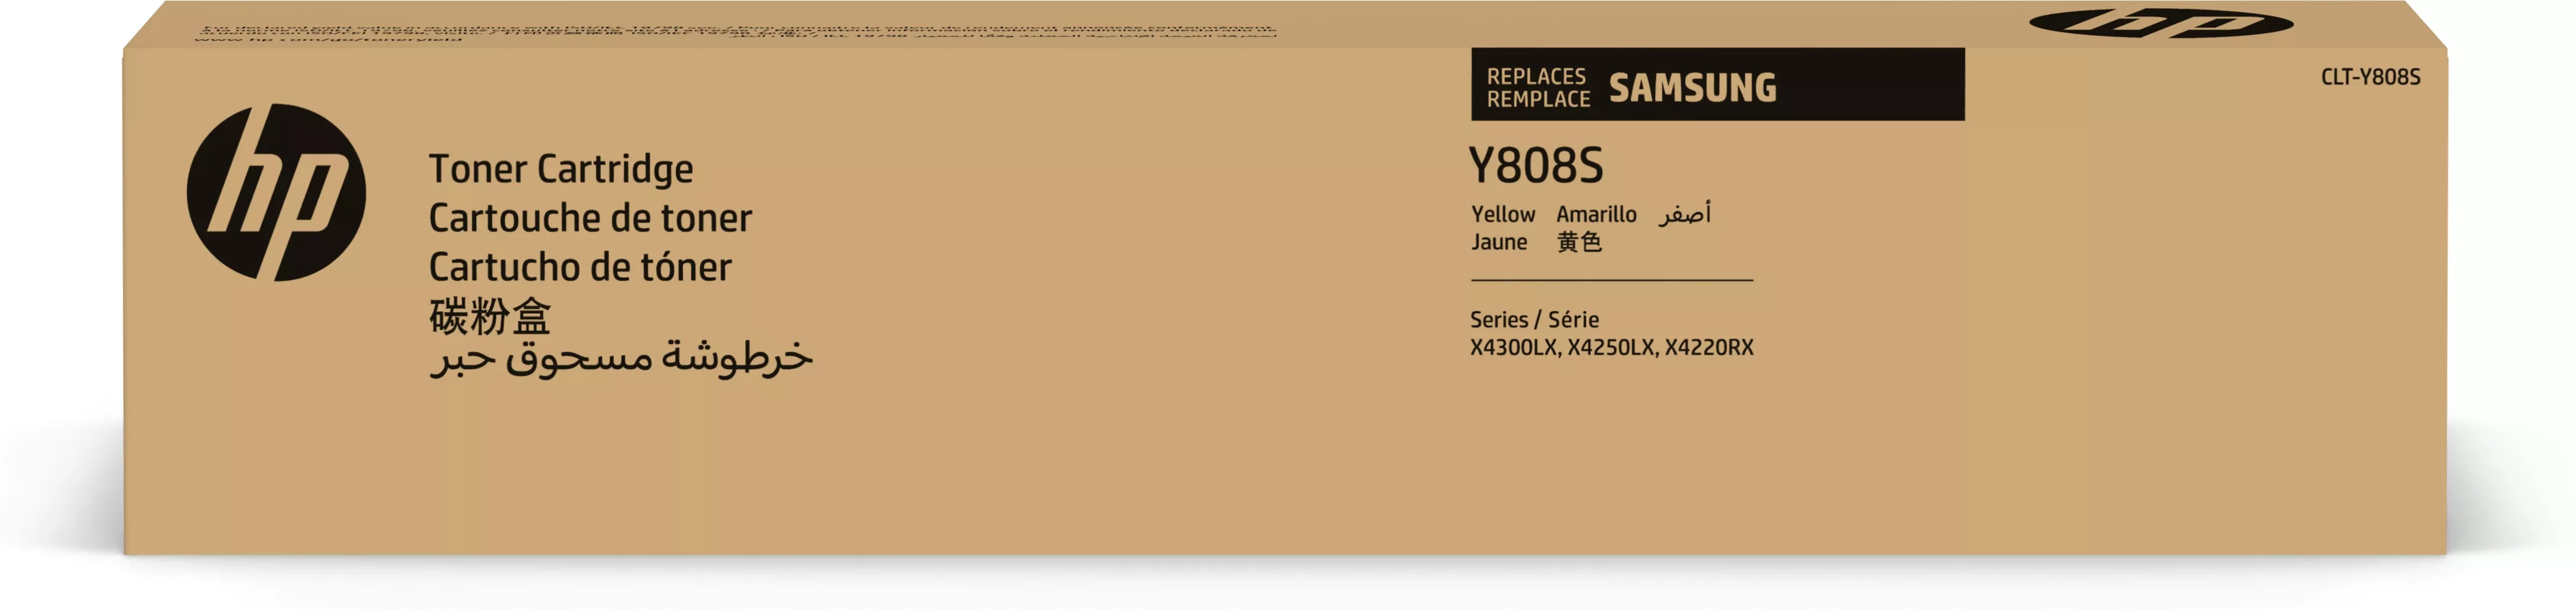 Achat SAMSUNG CLT-Y808S/ELS Yellow Toner Cartridge HP au meilleur prix